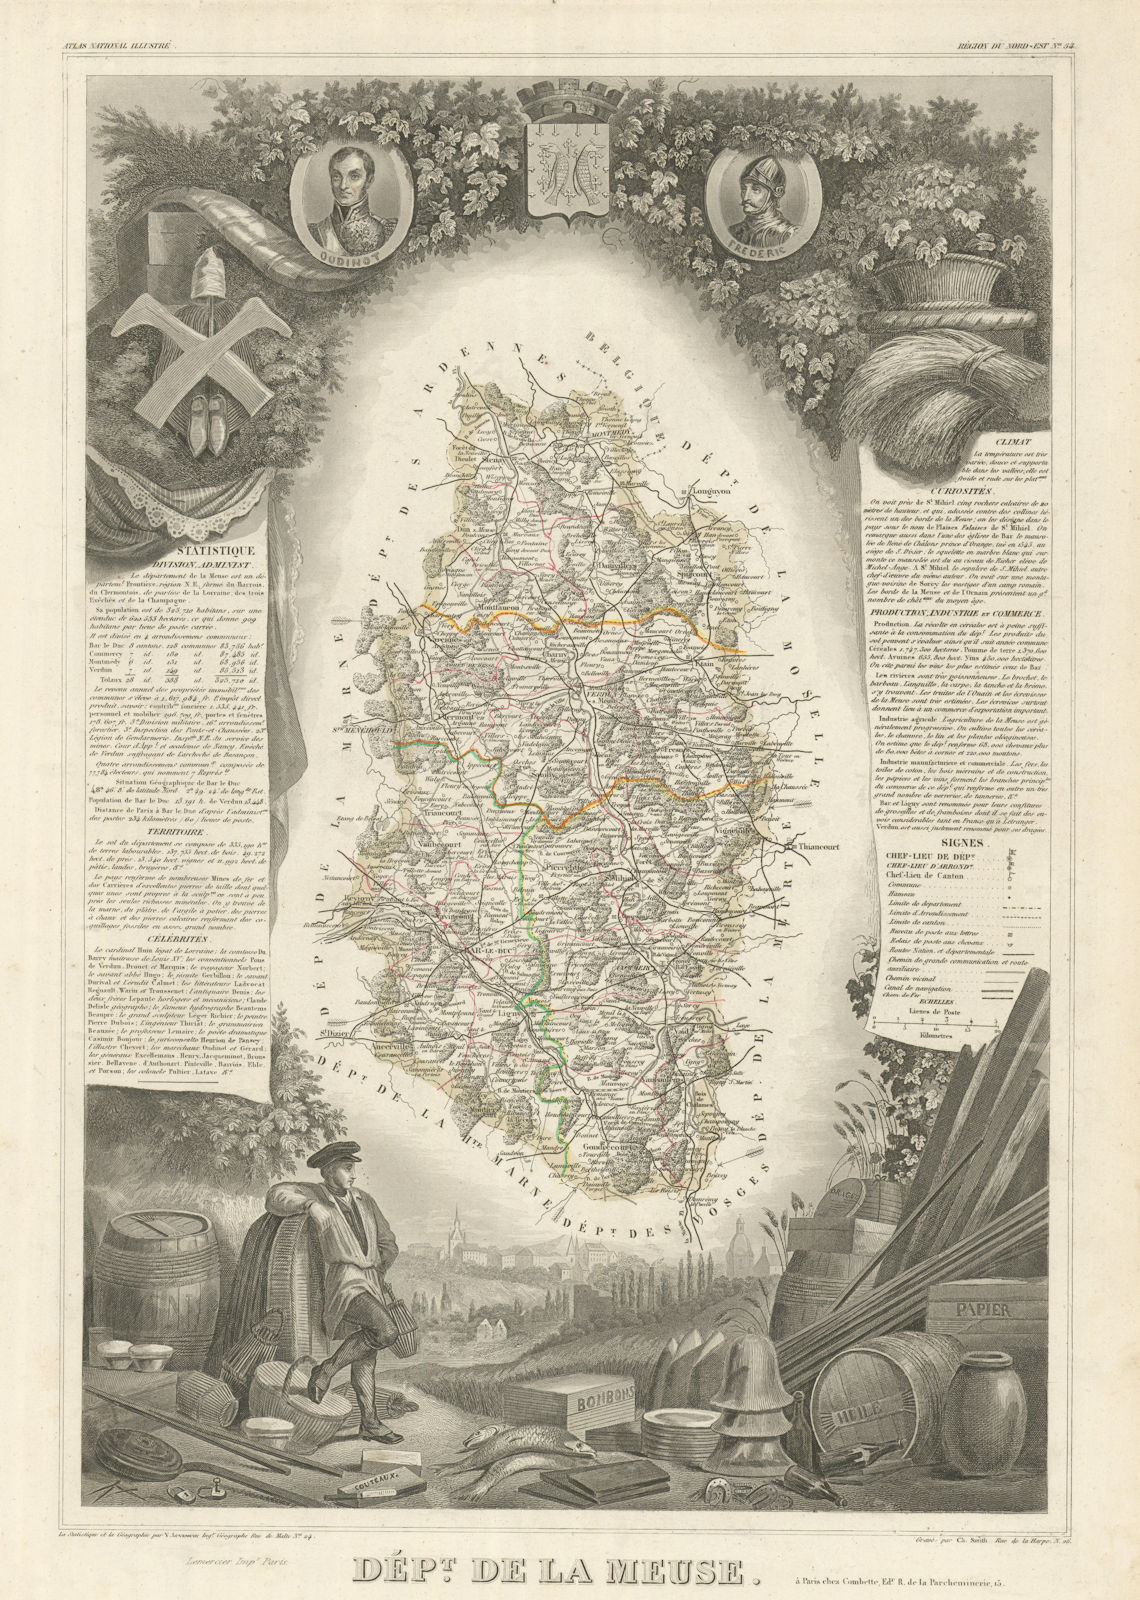 Département de la MEUSE. Decorative antique map/carte by Victor LEVASSEUR 1856